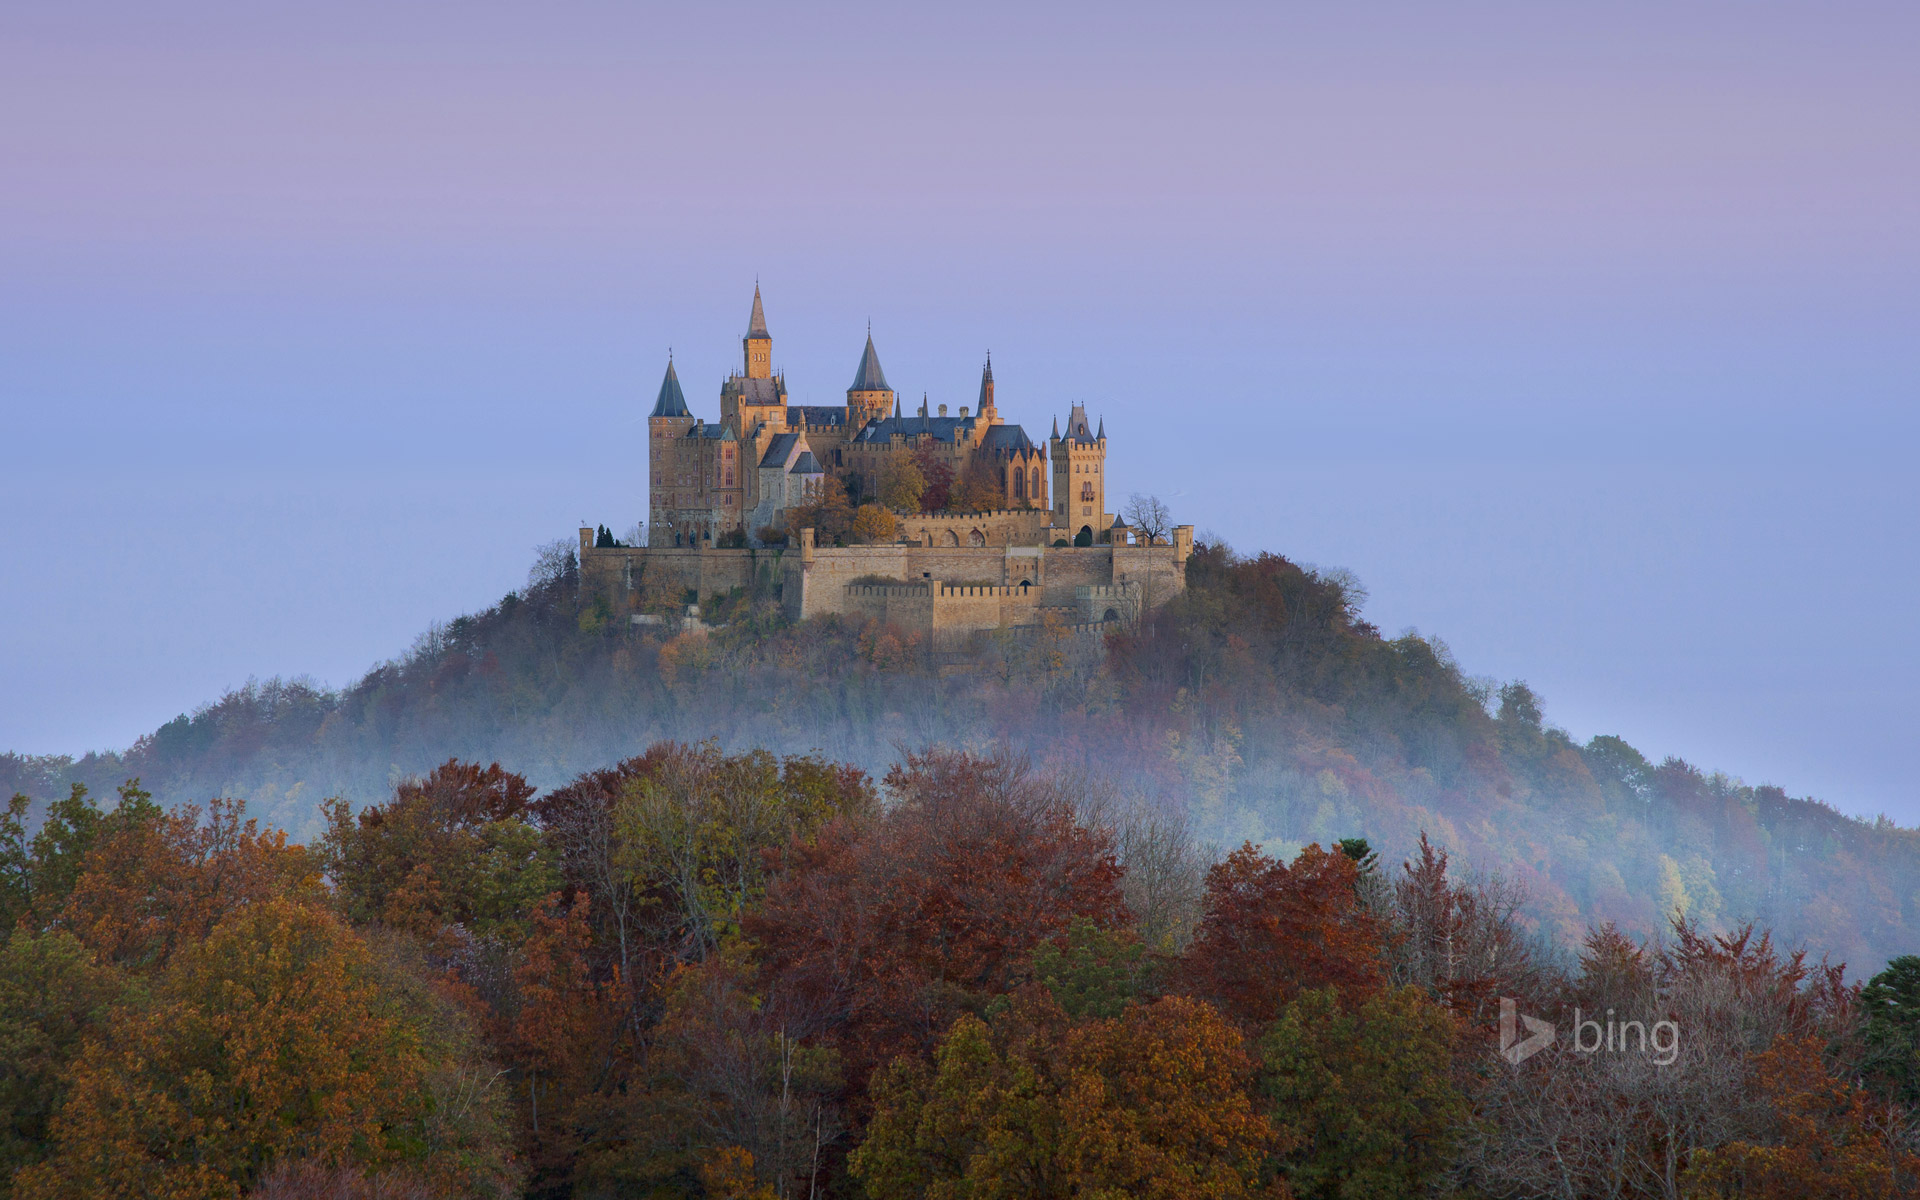 Hohenzollern Castle near Stuttgart, Germany